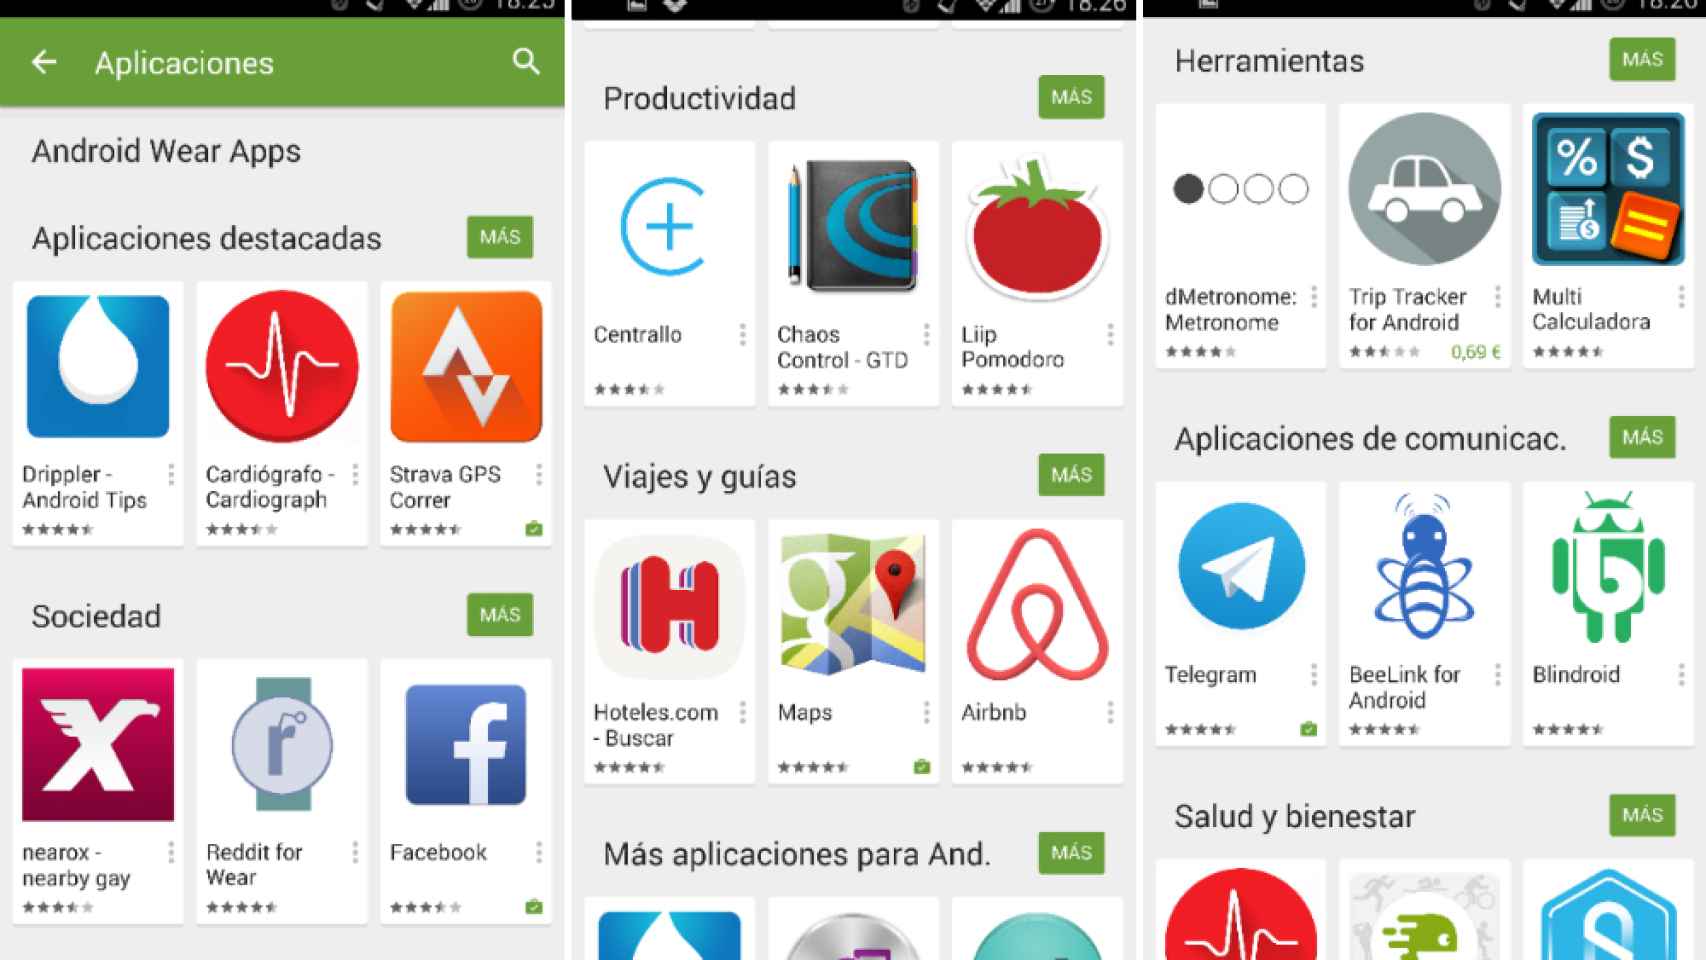 Google Play añade 8 nuevas categorías de apps compatibles con Android Wear